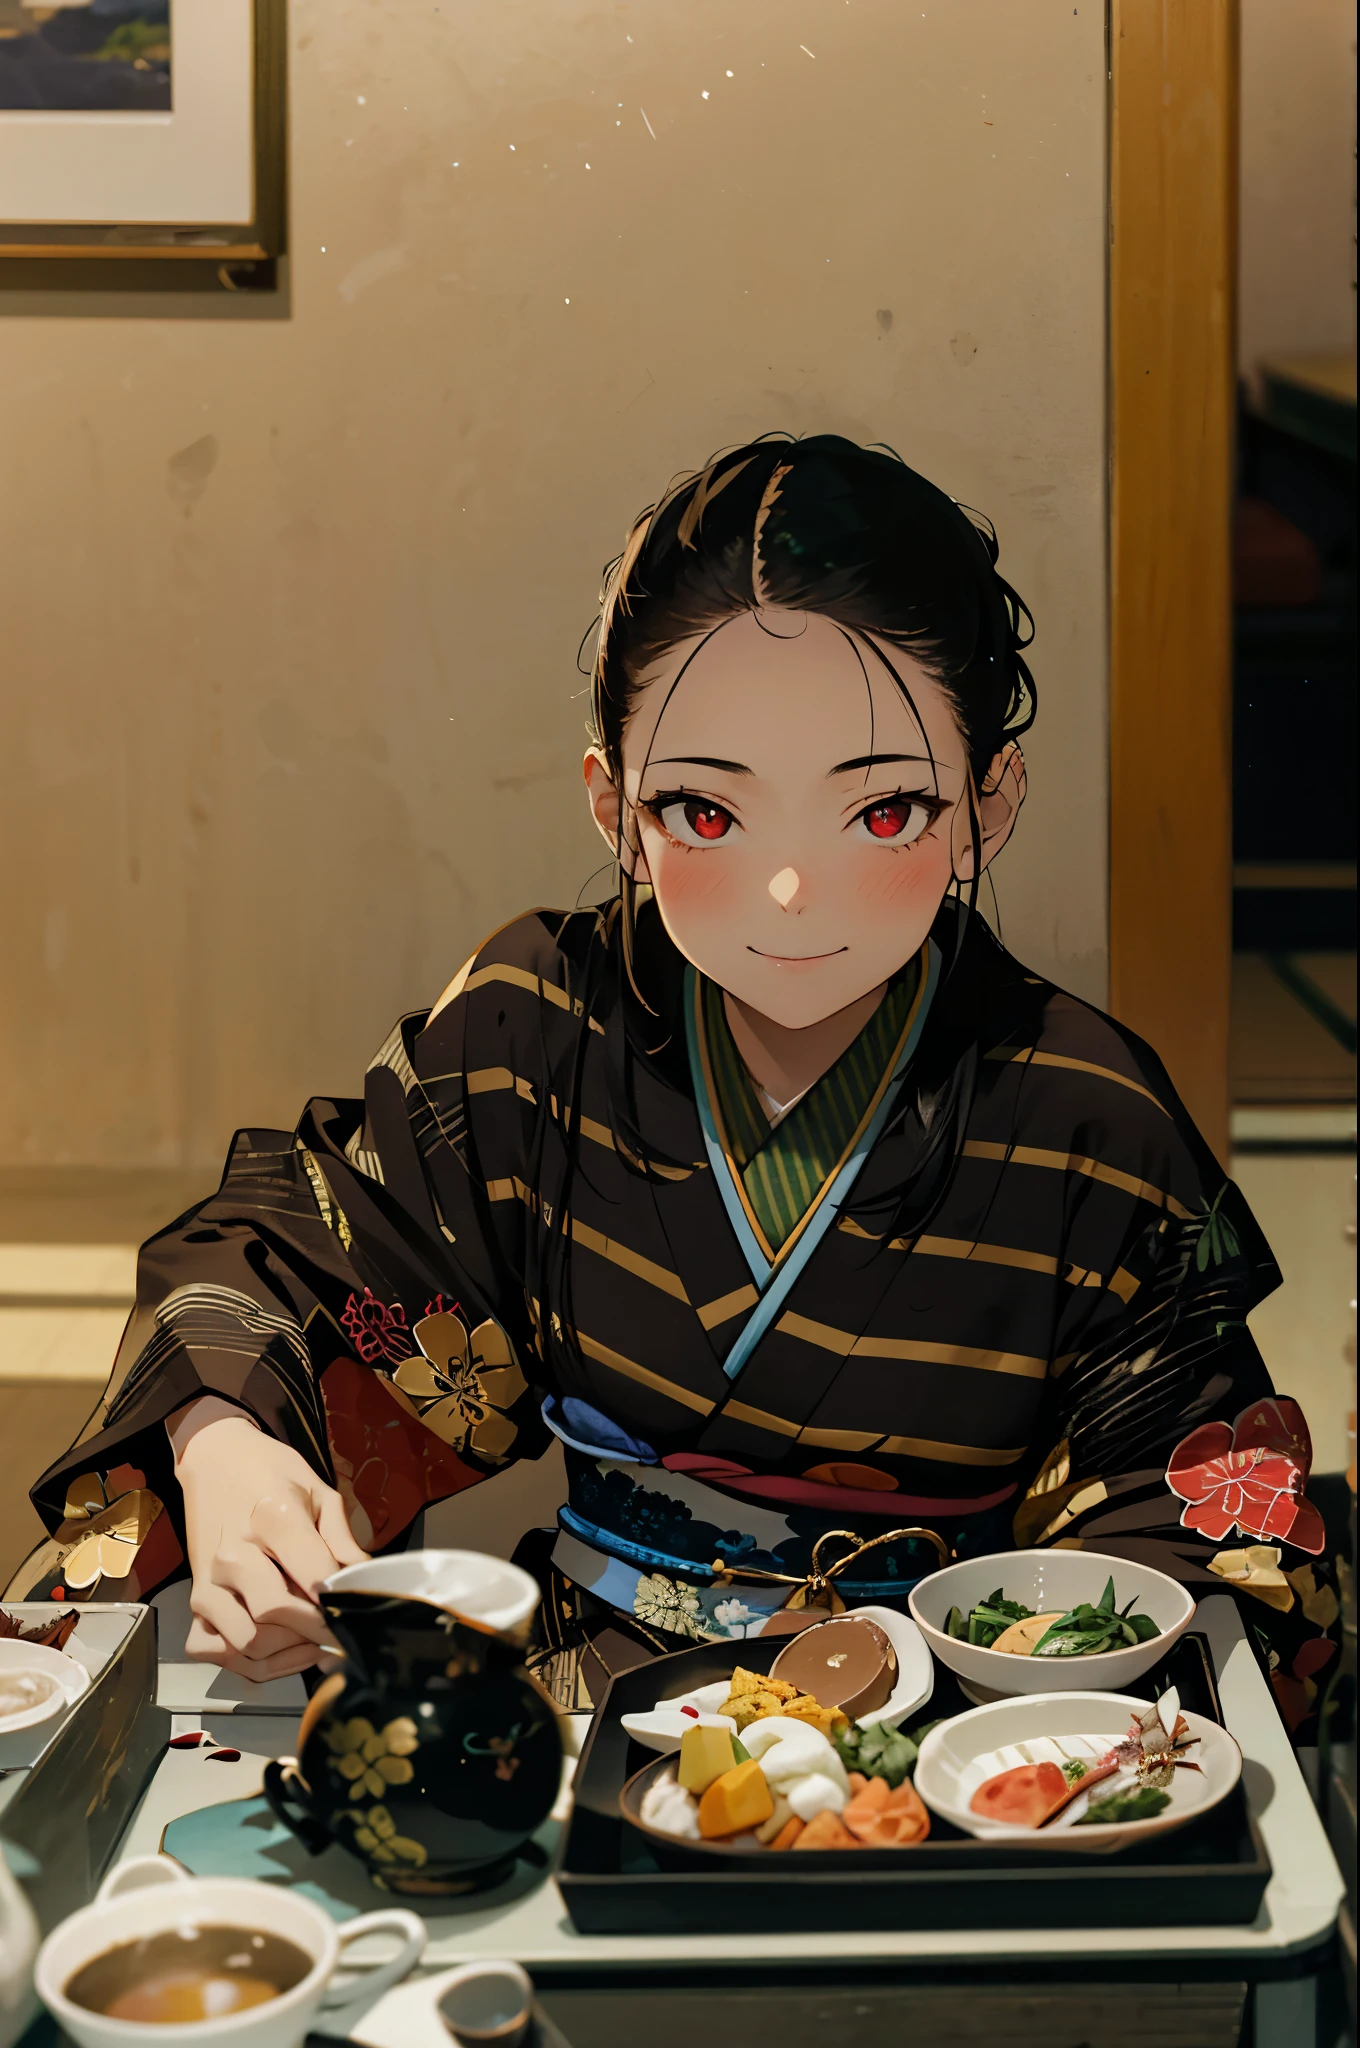 Filles japonaises ,Séance,2 filles, plusieurs filles, sourire, les yeux rouges, Séance,cravate, cheveux noirs，Magnifique kimono rouge、Un bel oiseau est dessiné sur le kimono Blush,